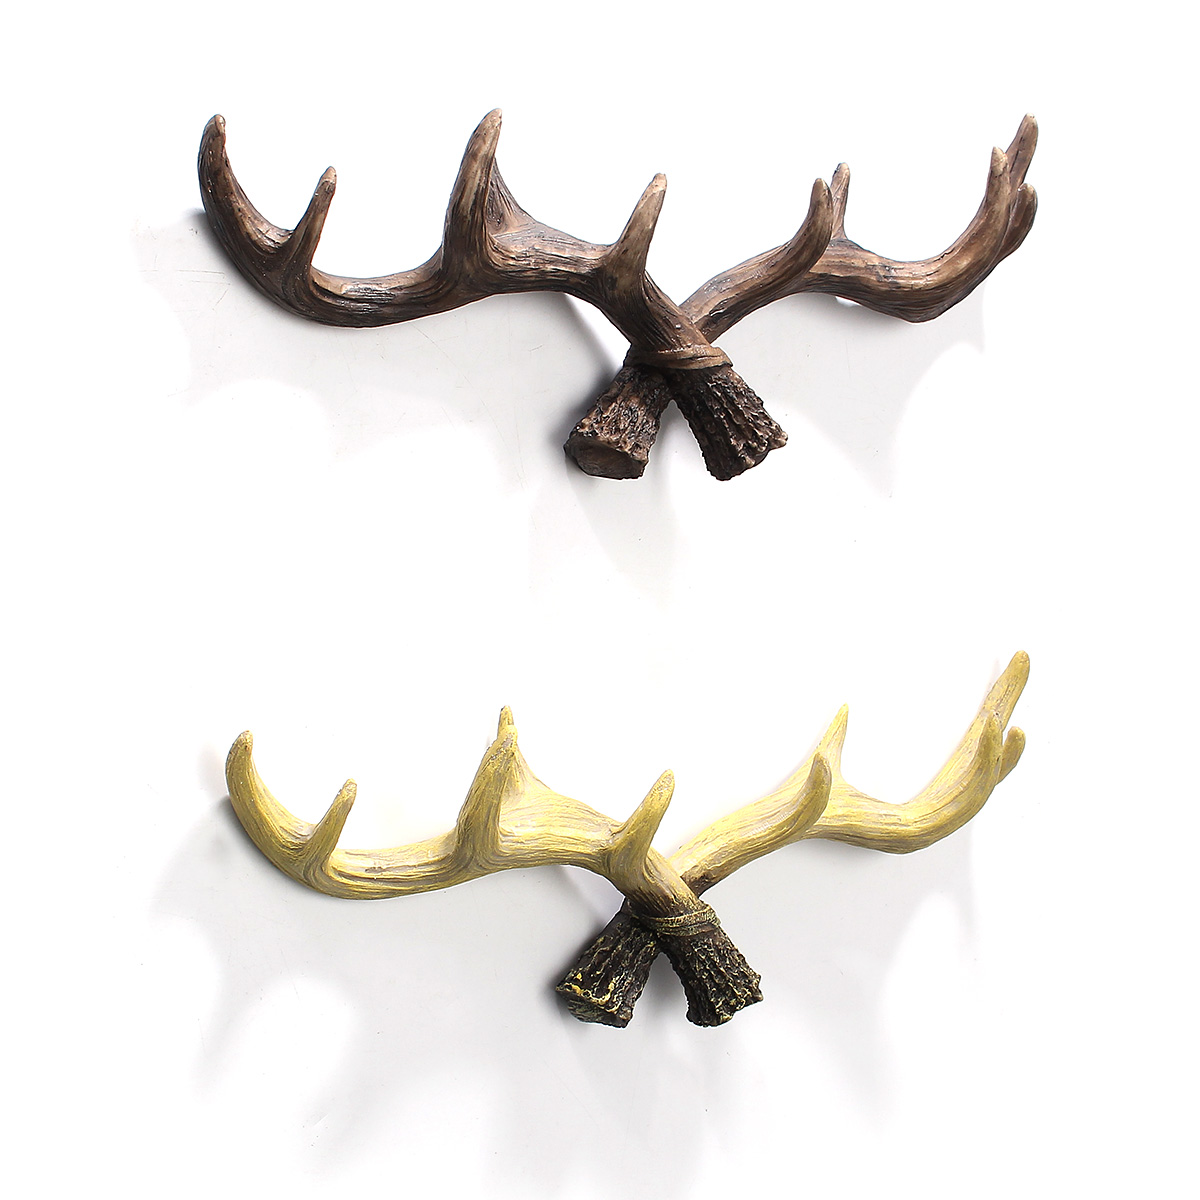 

Rustic Reindeer Stag Deer Antlers Coat Wall Hooks Decorative Wall Art Gift